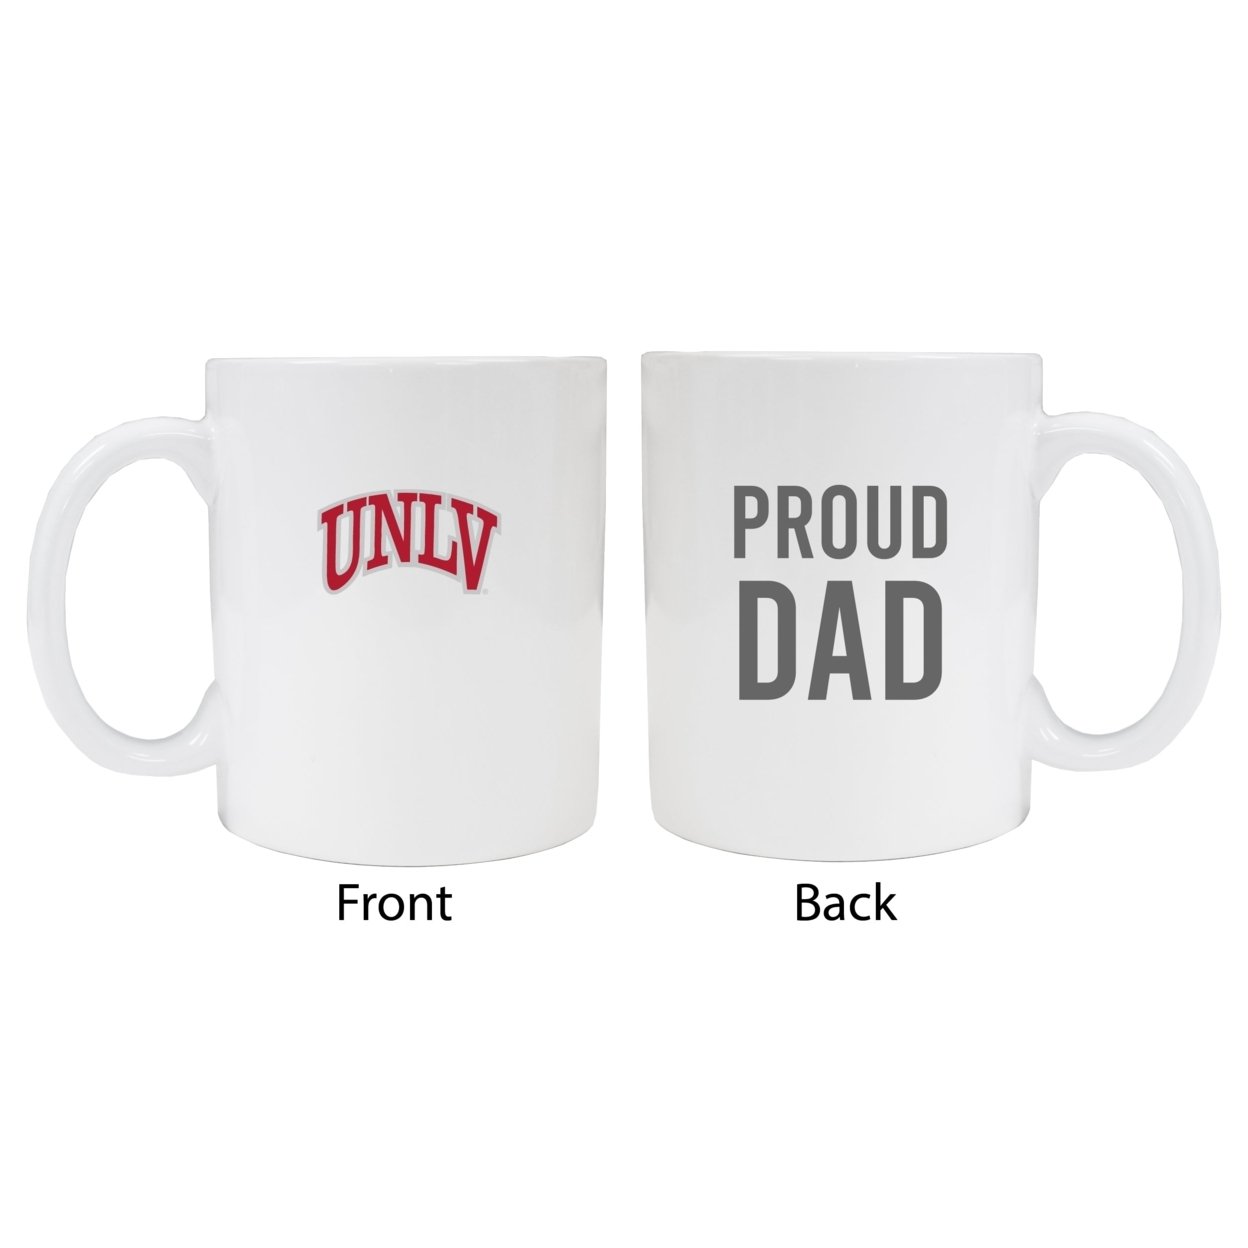 UNLV Rebels Proud Dad Ceramic Coffee Mug - White